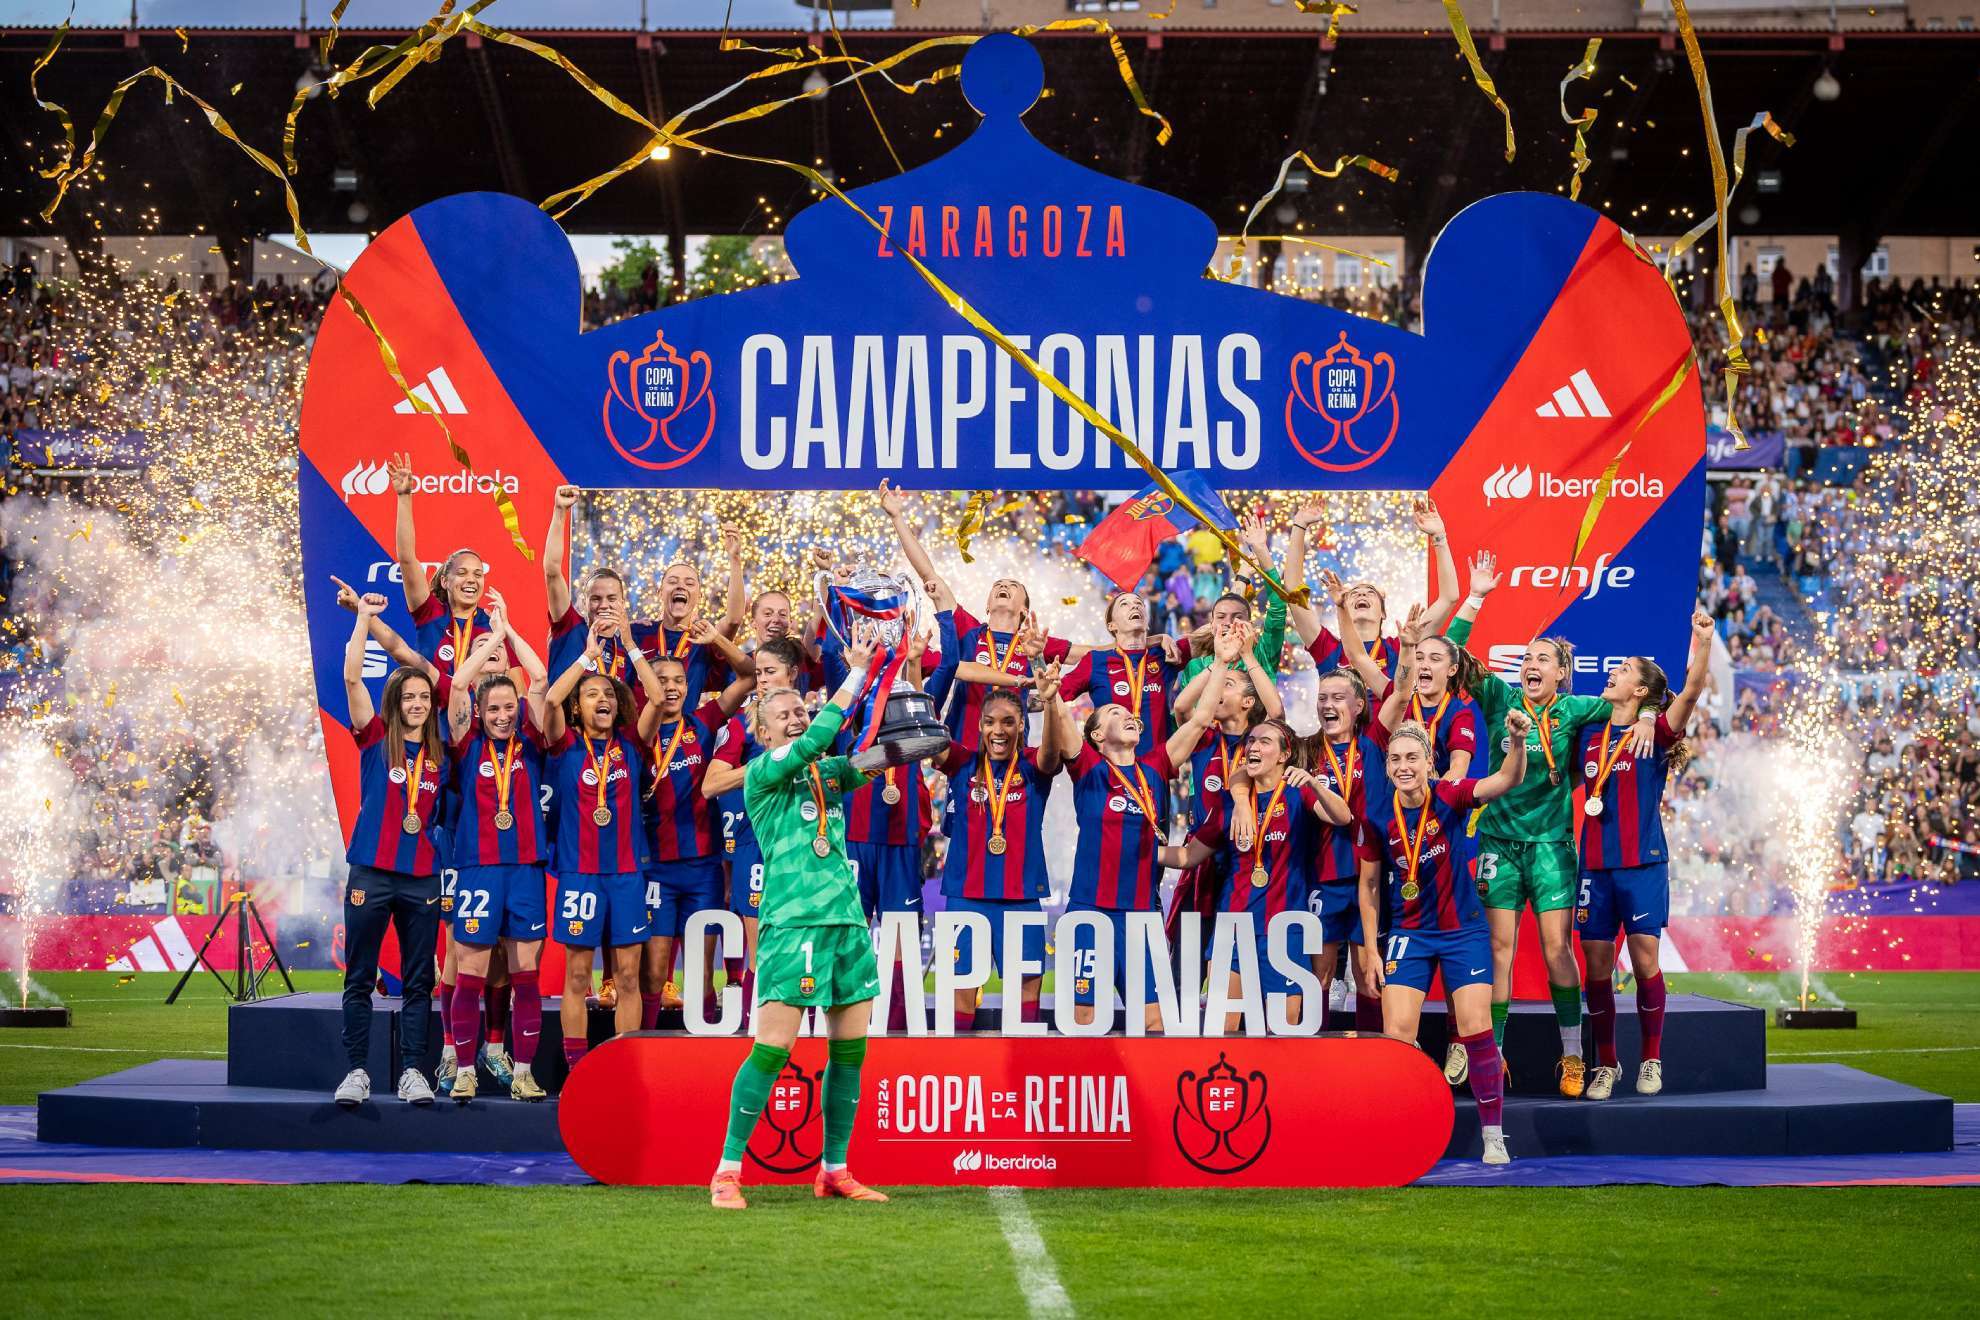 Sandra Pa�os levanta el t�tulo de campeona de Copa en La Romareda / FC Barcelona